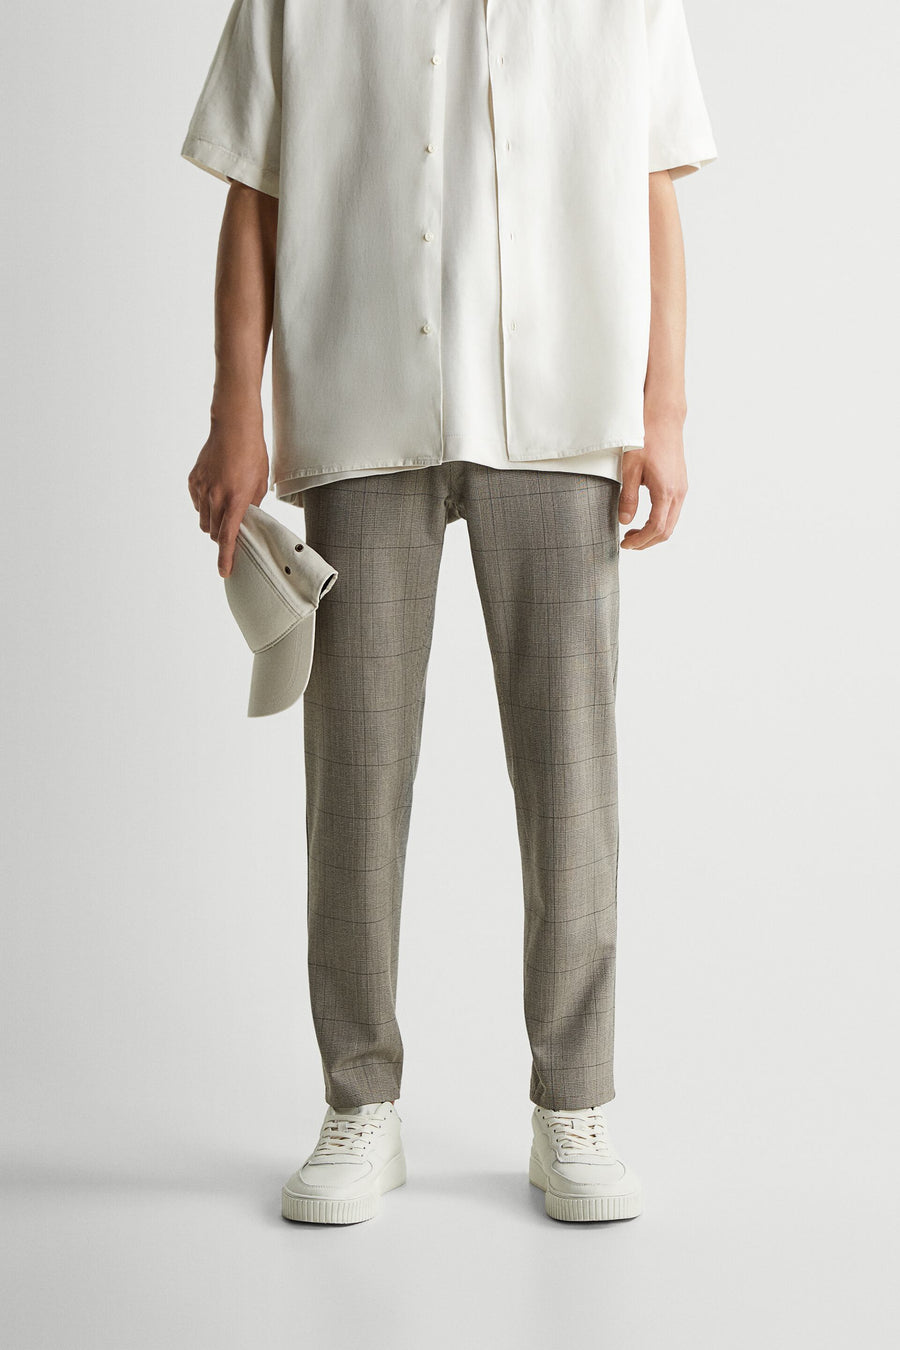 Zara Man Check (Polyester Mix) Formal Trouser0706/515/711